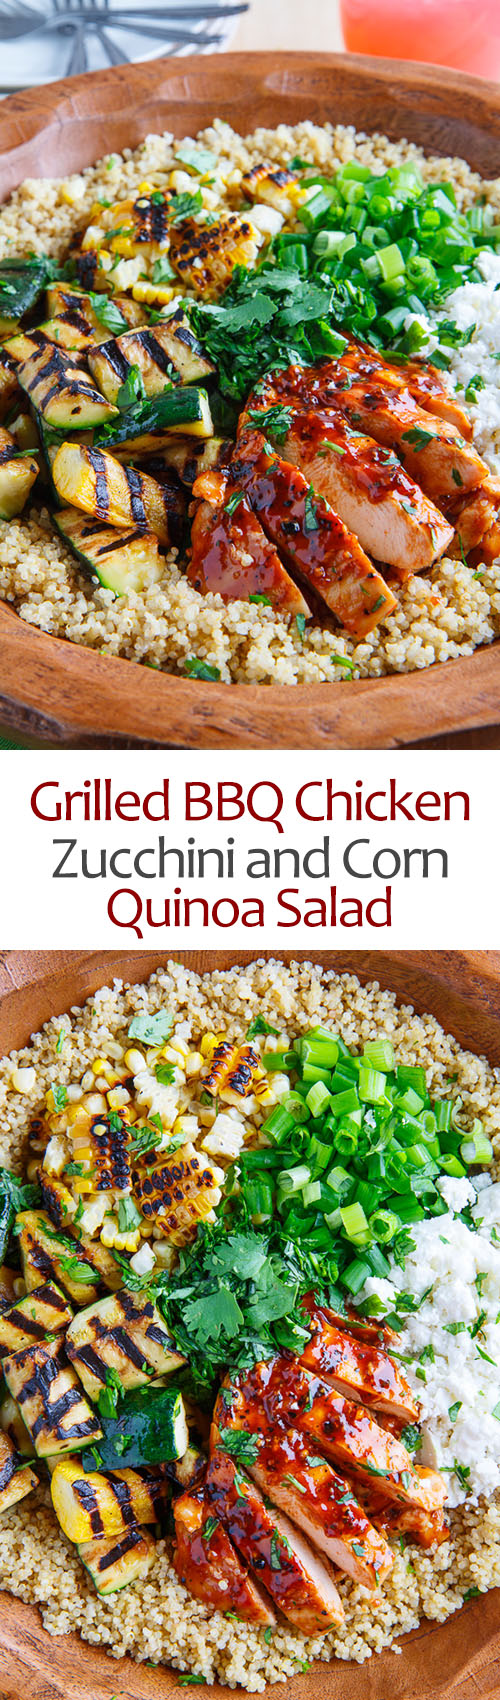 Grilled BBQ Chicken, Zucchini and Corn Quinoa Salad